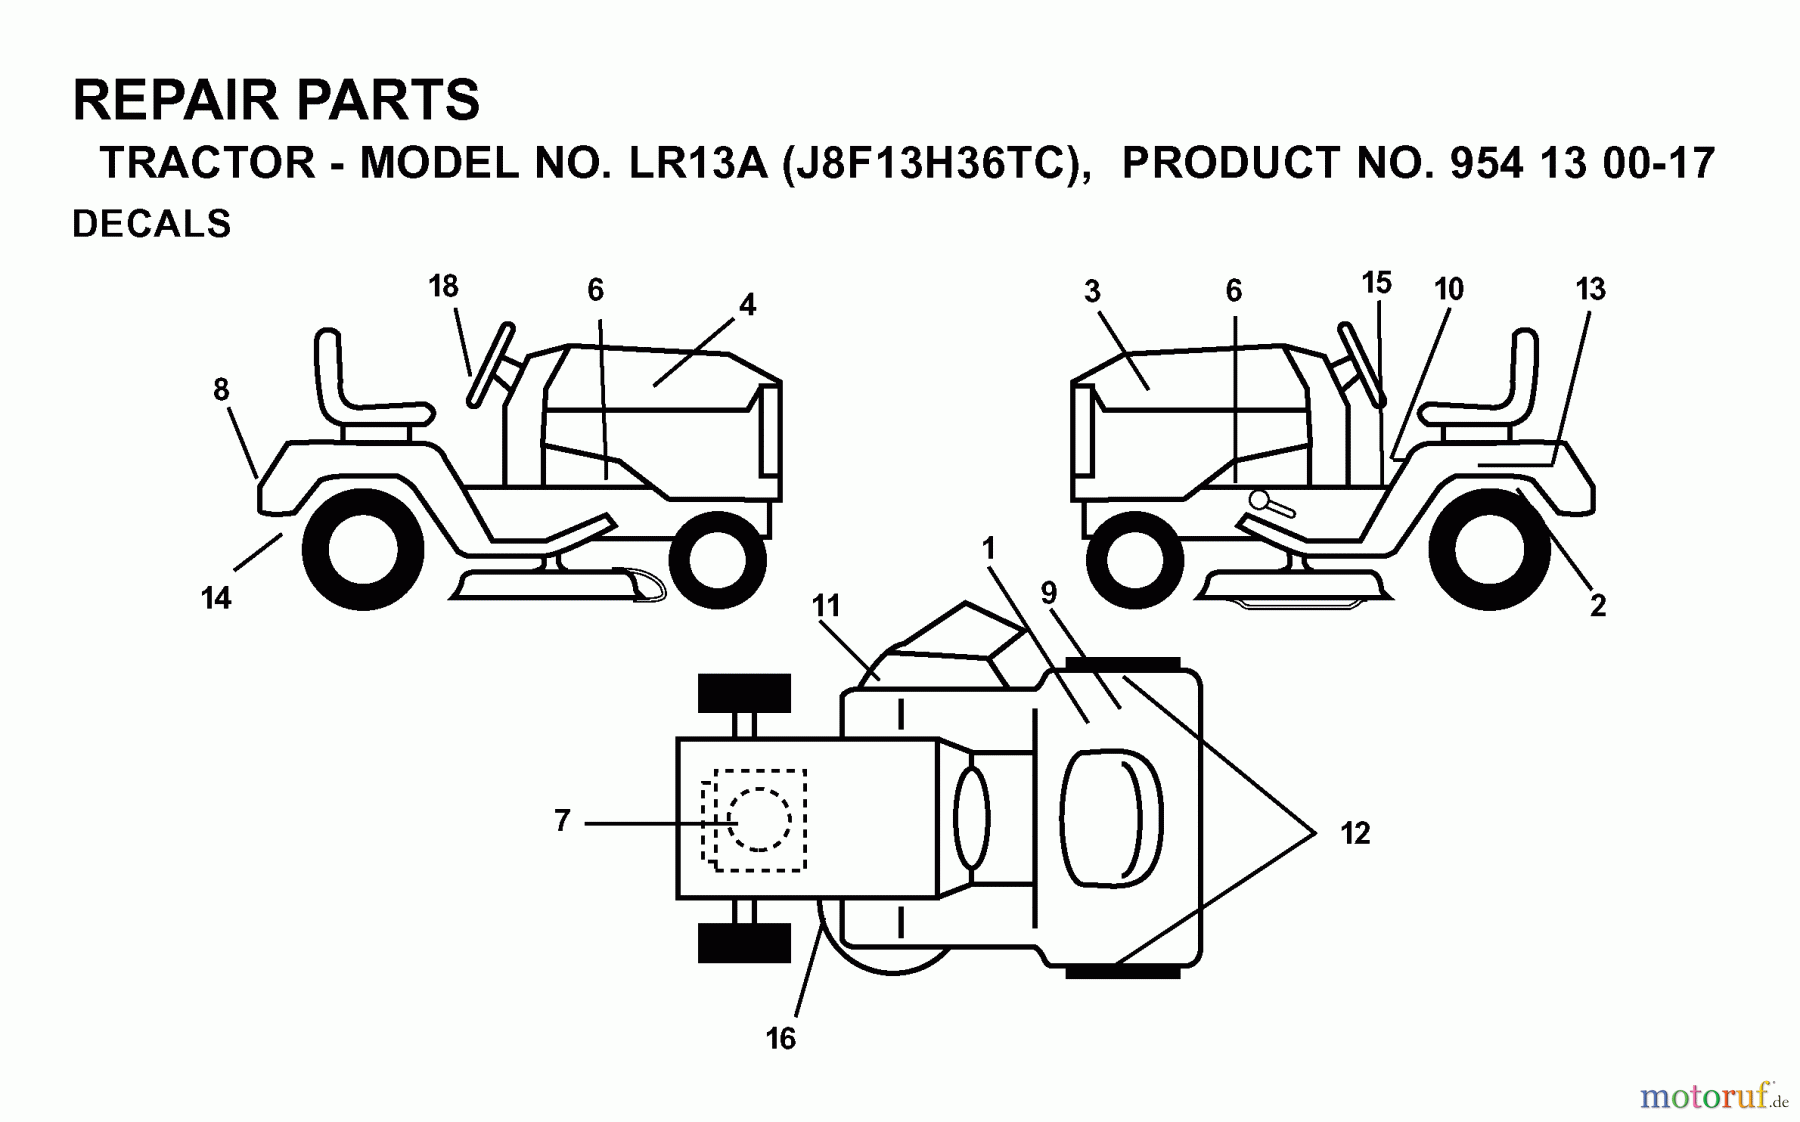  Jonsered Rasen  und Garten Traktoren LR13A (J8F13H36TC, 95413007) - Jonsered Lawn & Garden Tractor (2000-02) DECALS